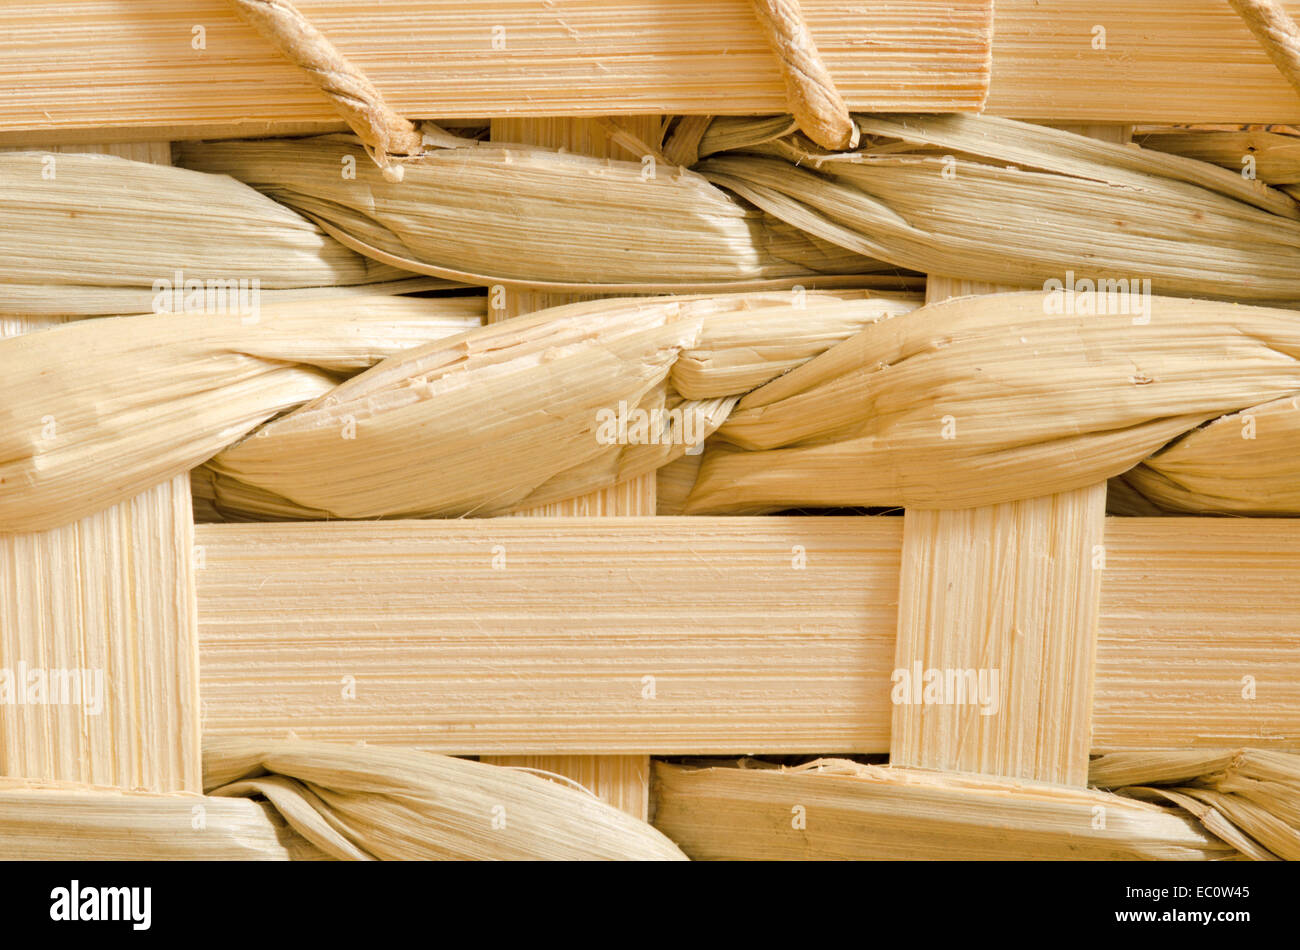 Ein Makro Nahaufnahme von Holz Korb Flechten Getreide für den Hintergrund oder Kopie. Stockfoto